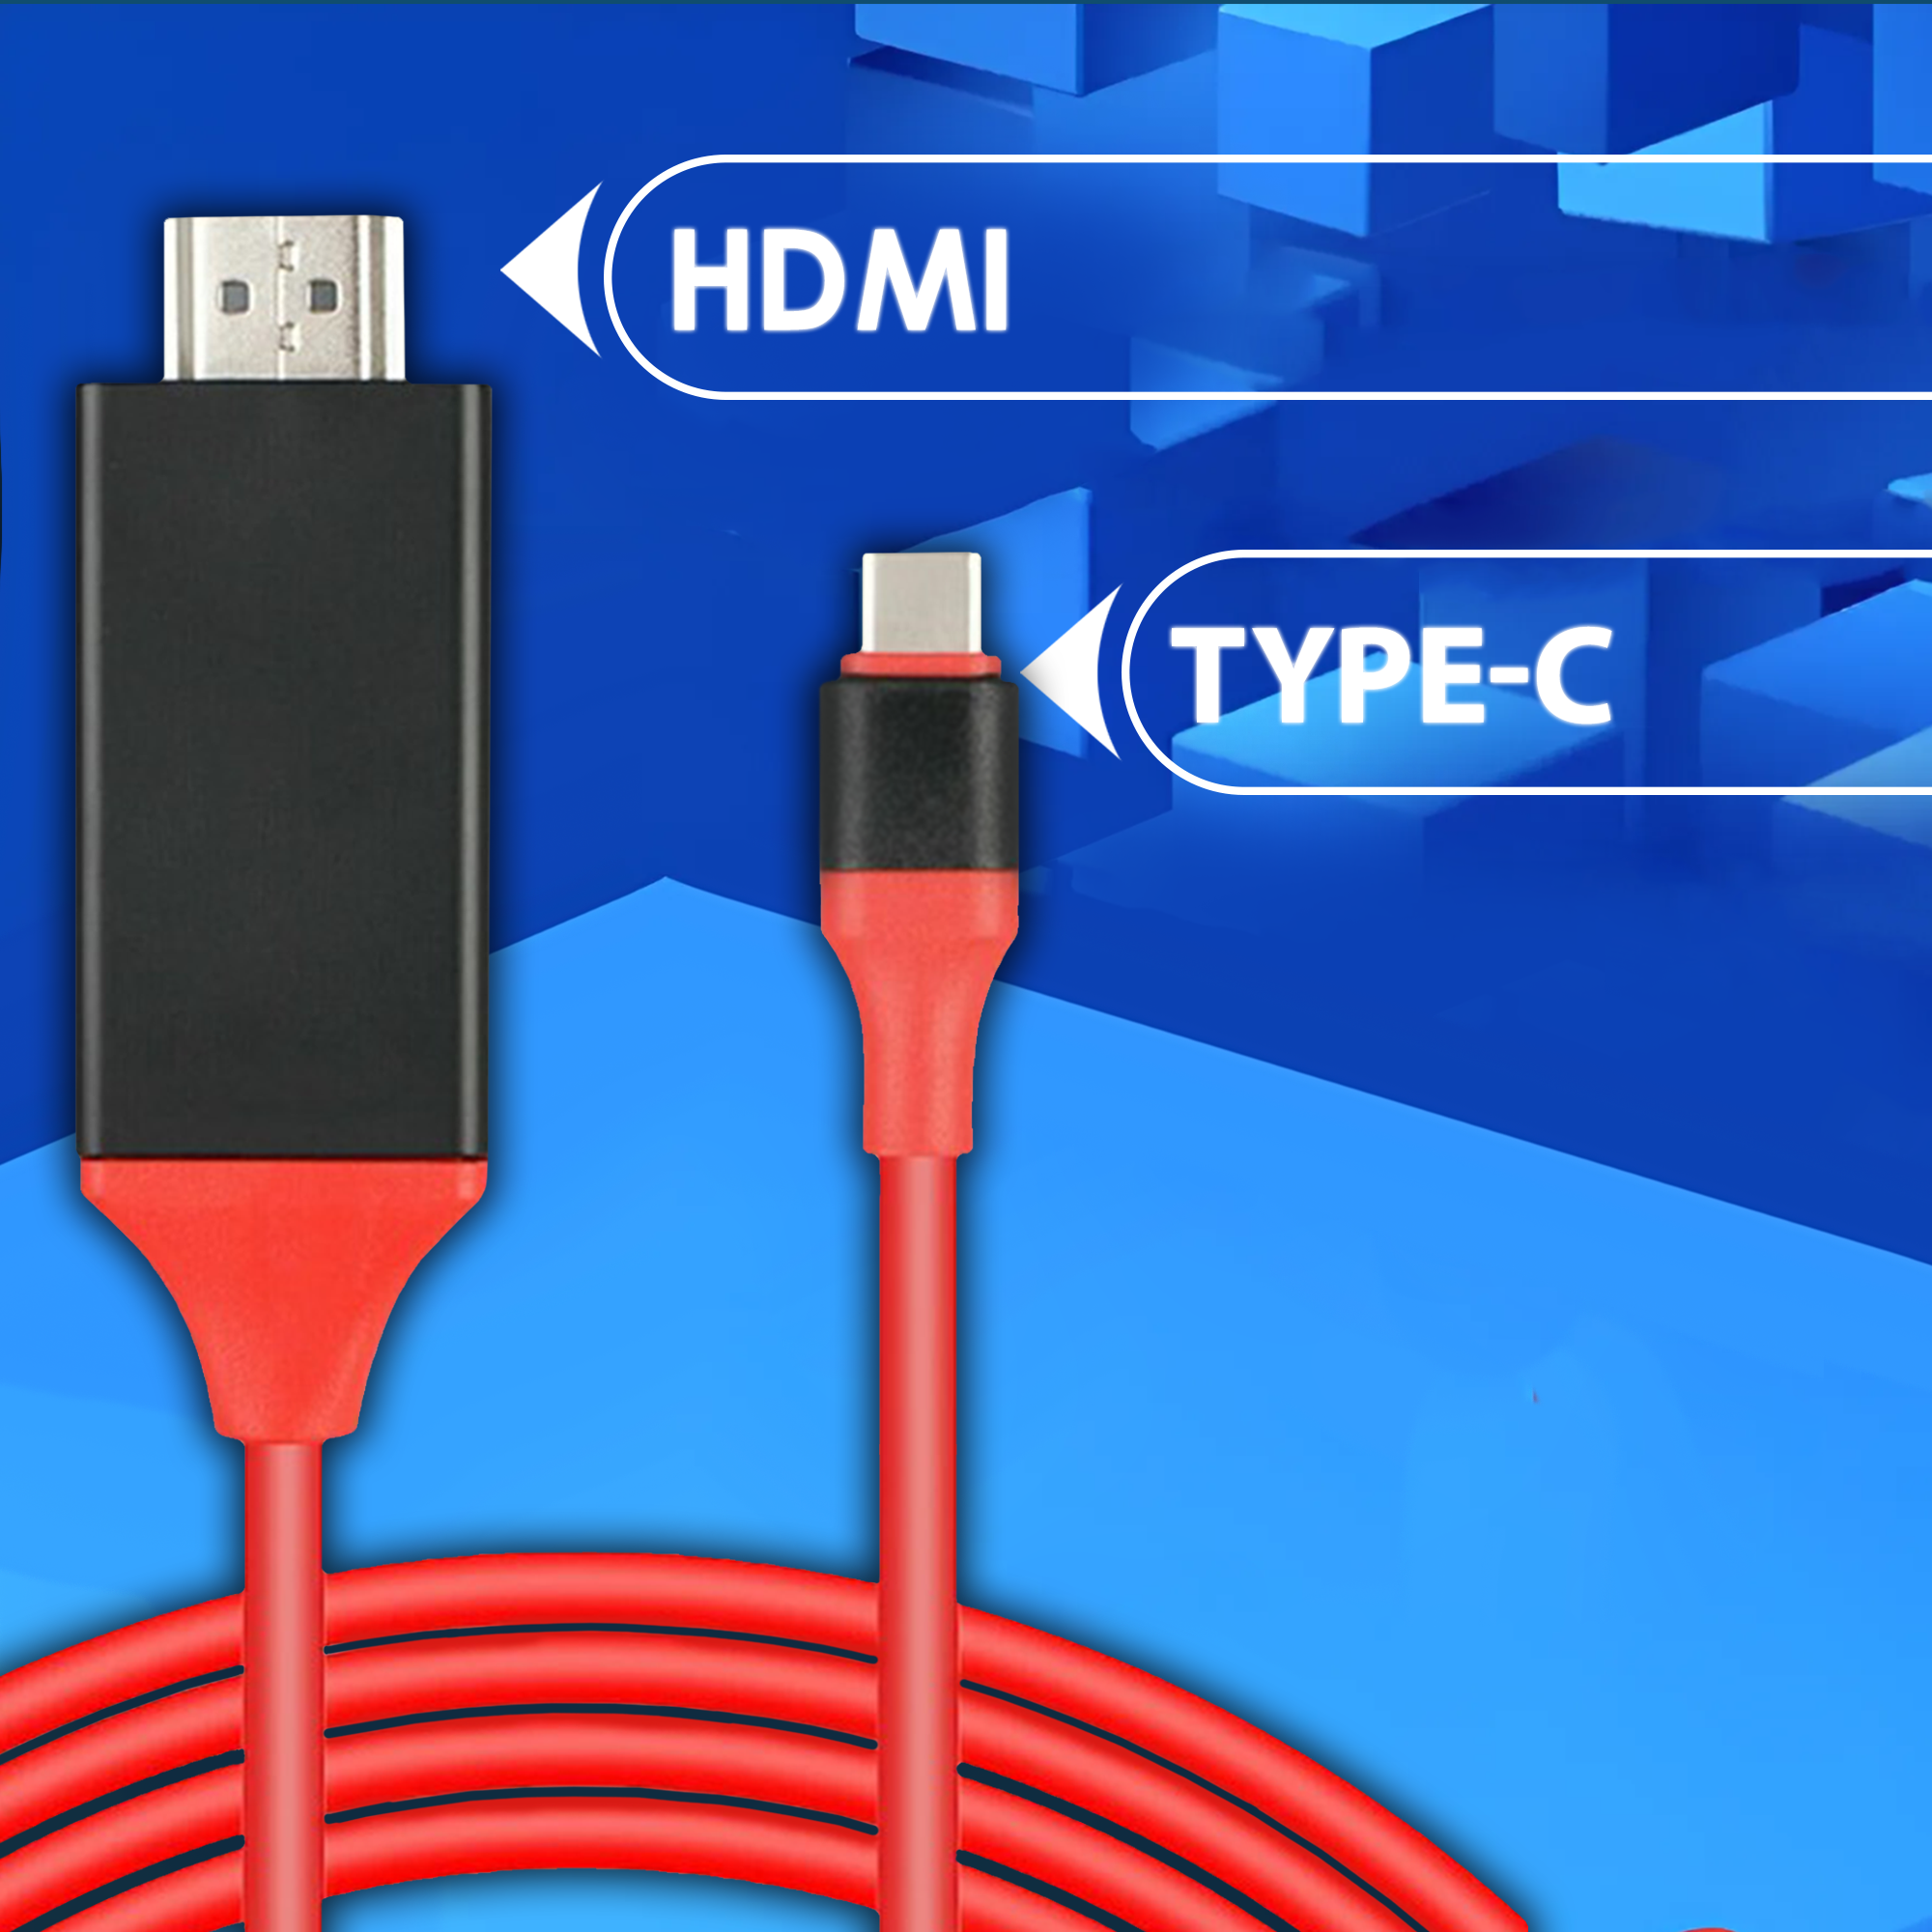 Hdmi кабель-переходник для iphone Lightning с питанием через USB, AMFOX, 2 м, удлинитель для айфона, провод переходник на displayport, красный